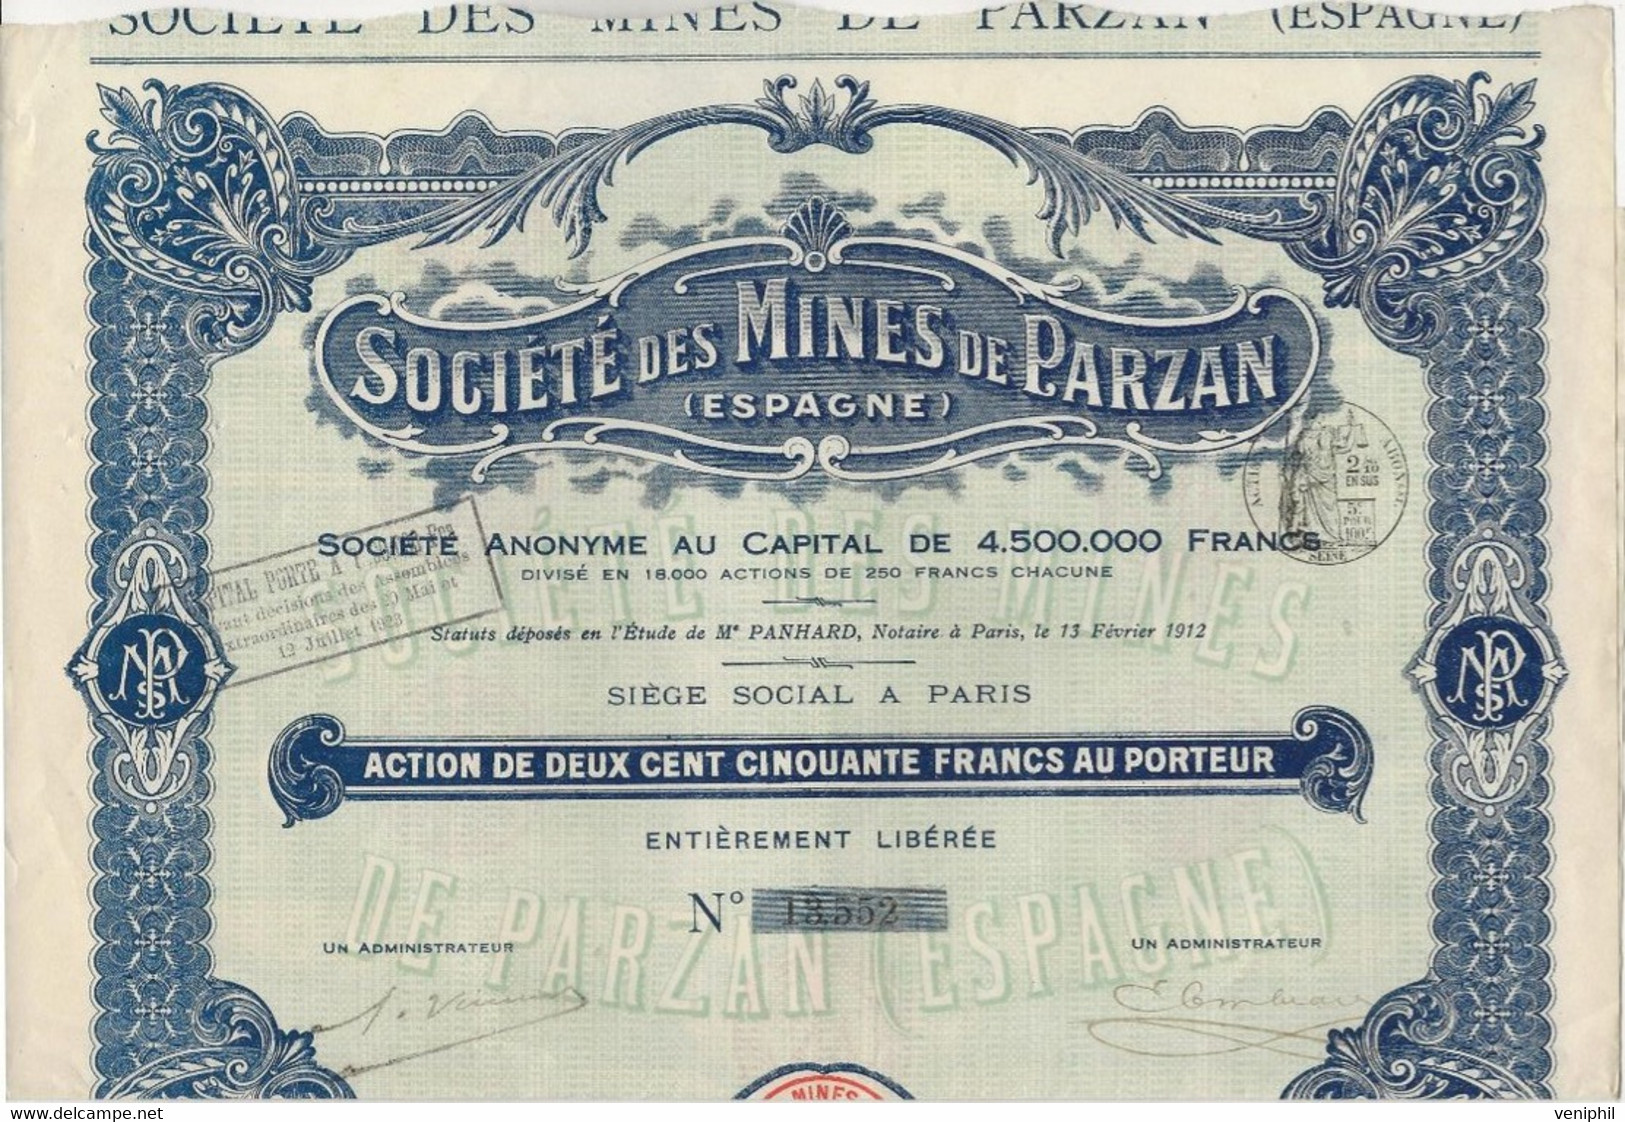 SOCIETE DE MINES DE PARZAN - ESPAGNE - ACTION DE 250 FRANCS  -1912 - Mijnen